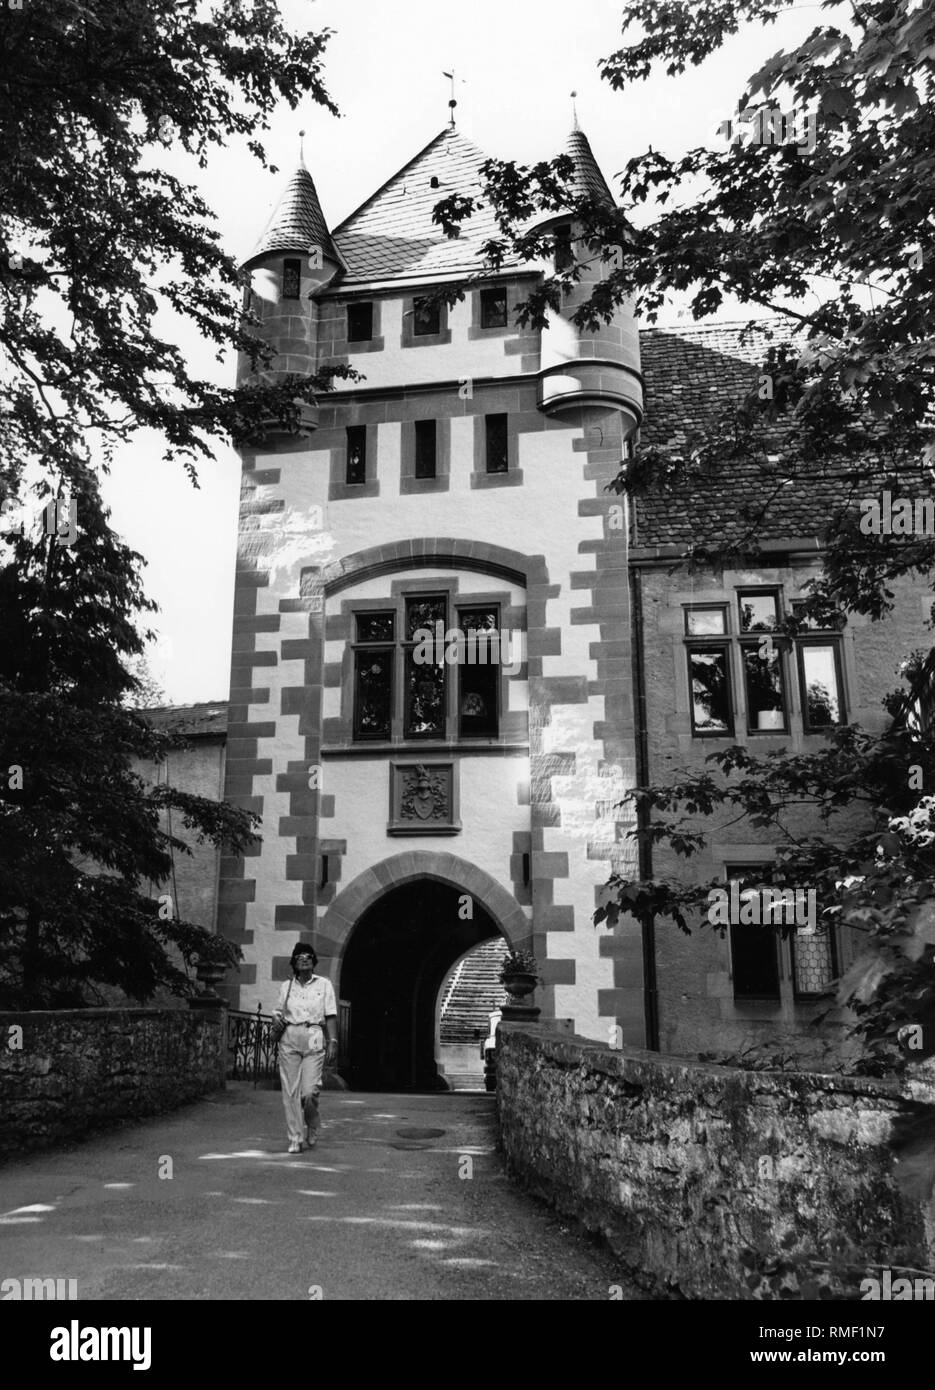 Der Zugang zur Burg in Jagsthausen, wo Götz von Berlichingen 1480 geboren wurde. Undatiertes Bild. Stockfoto